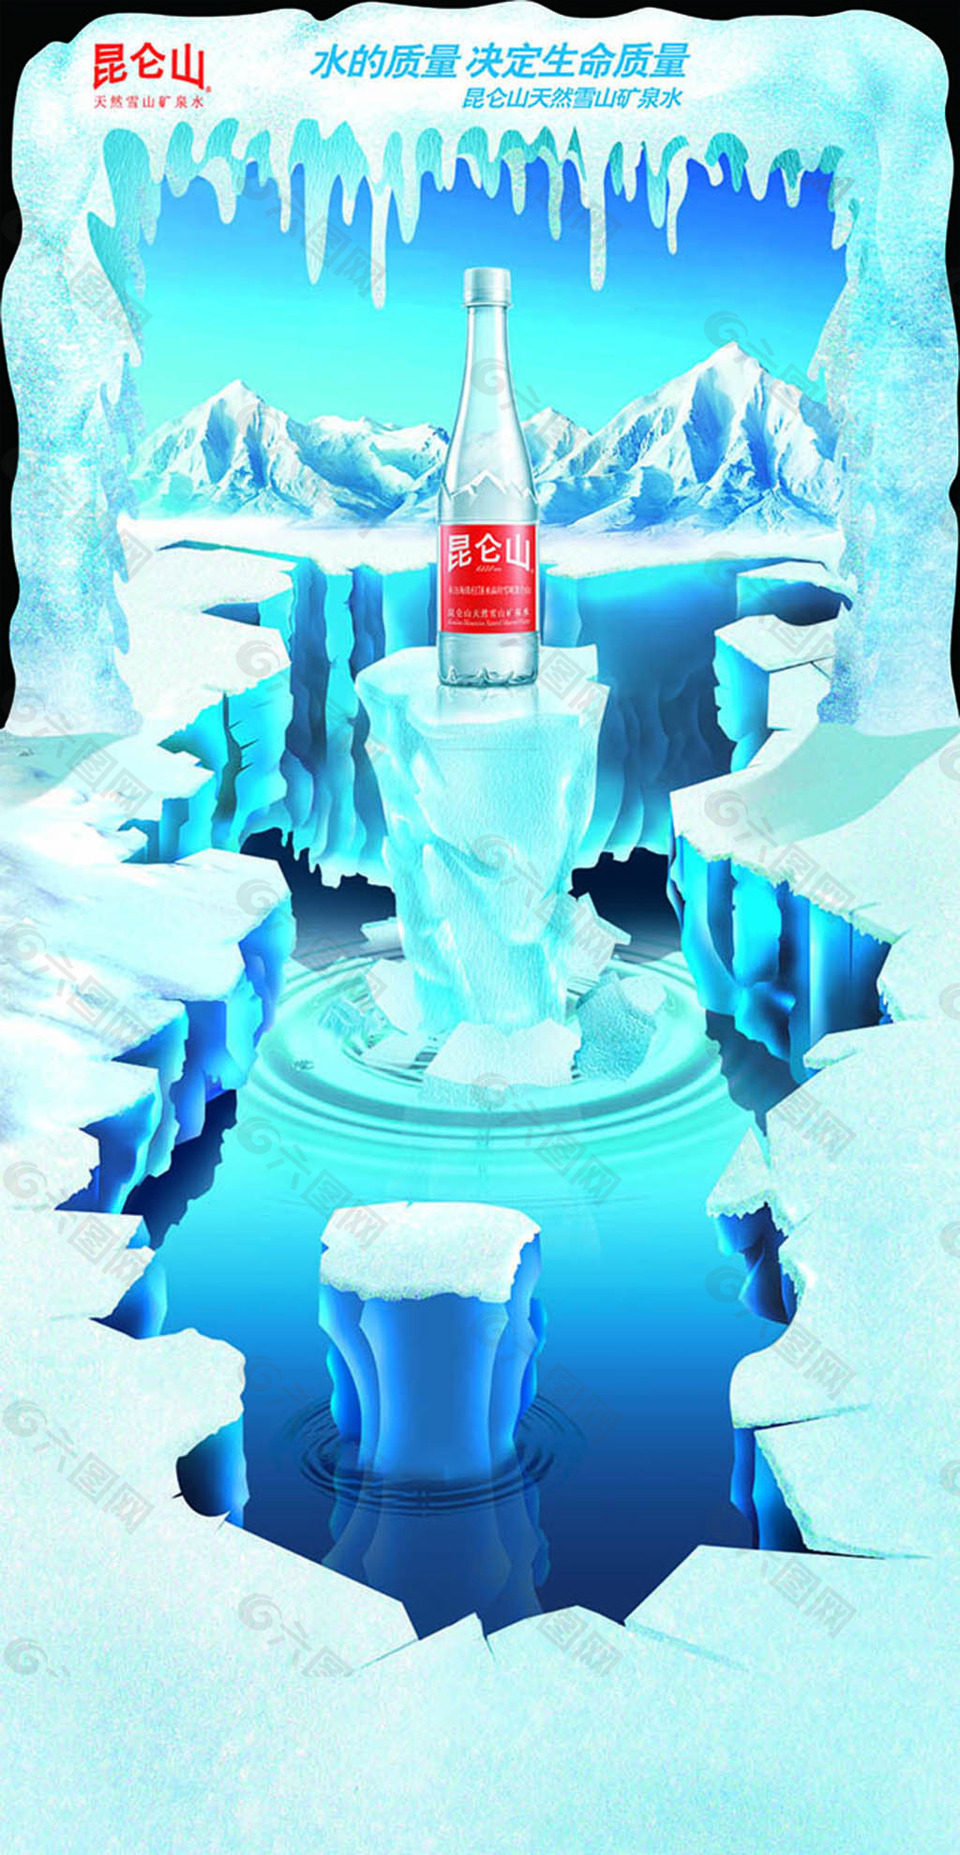 昆仑山矿泉水创意冰川广告设计